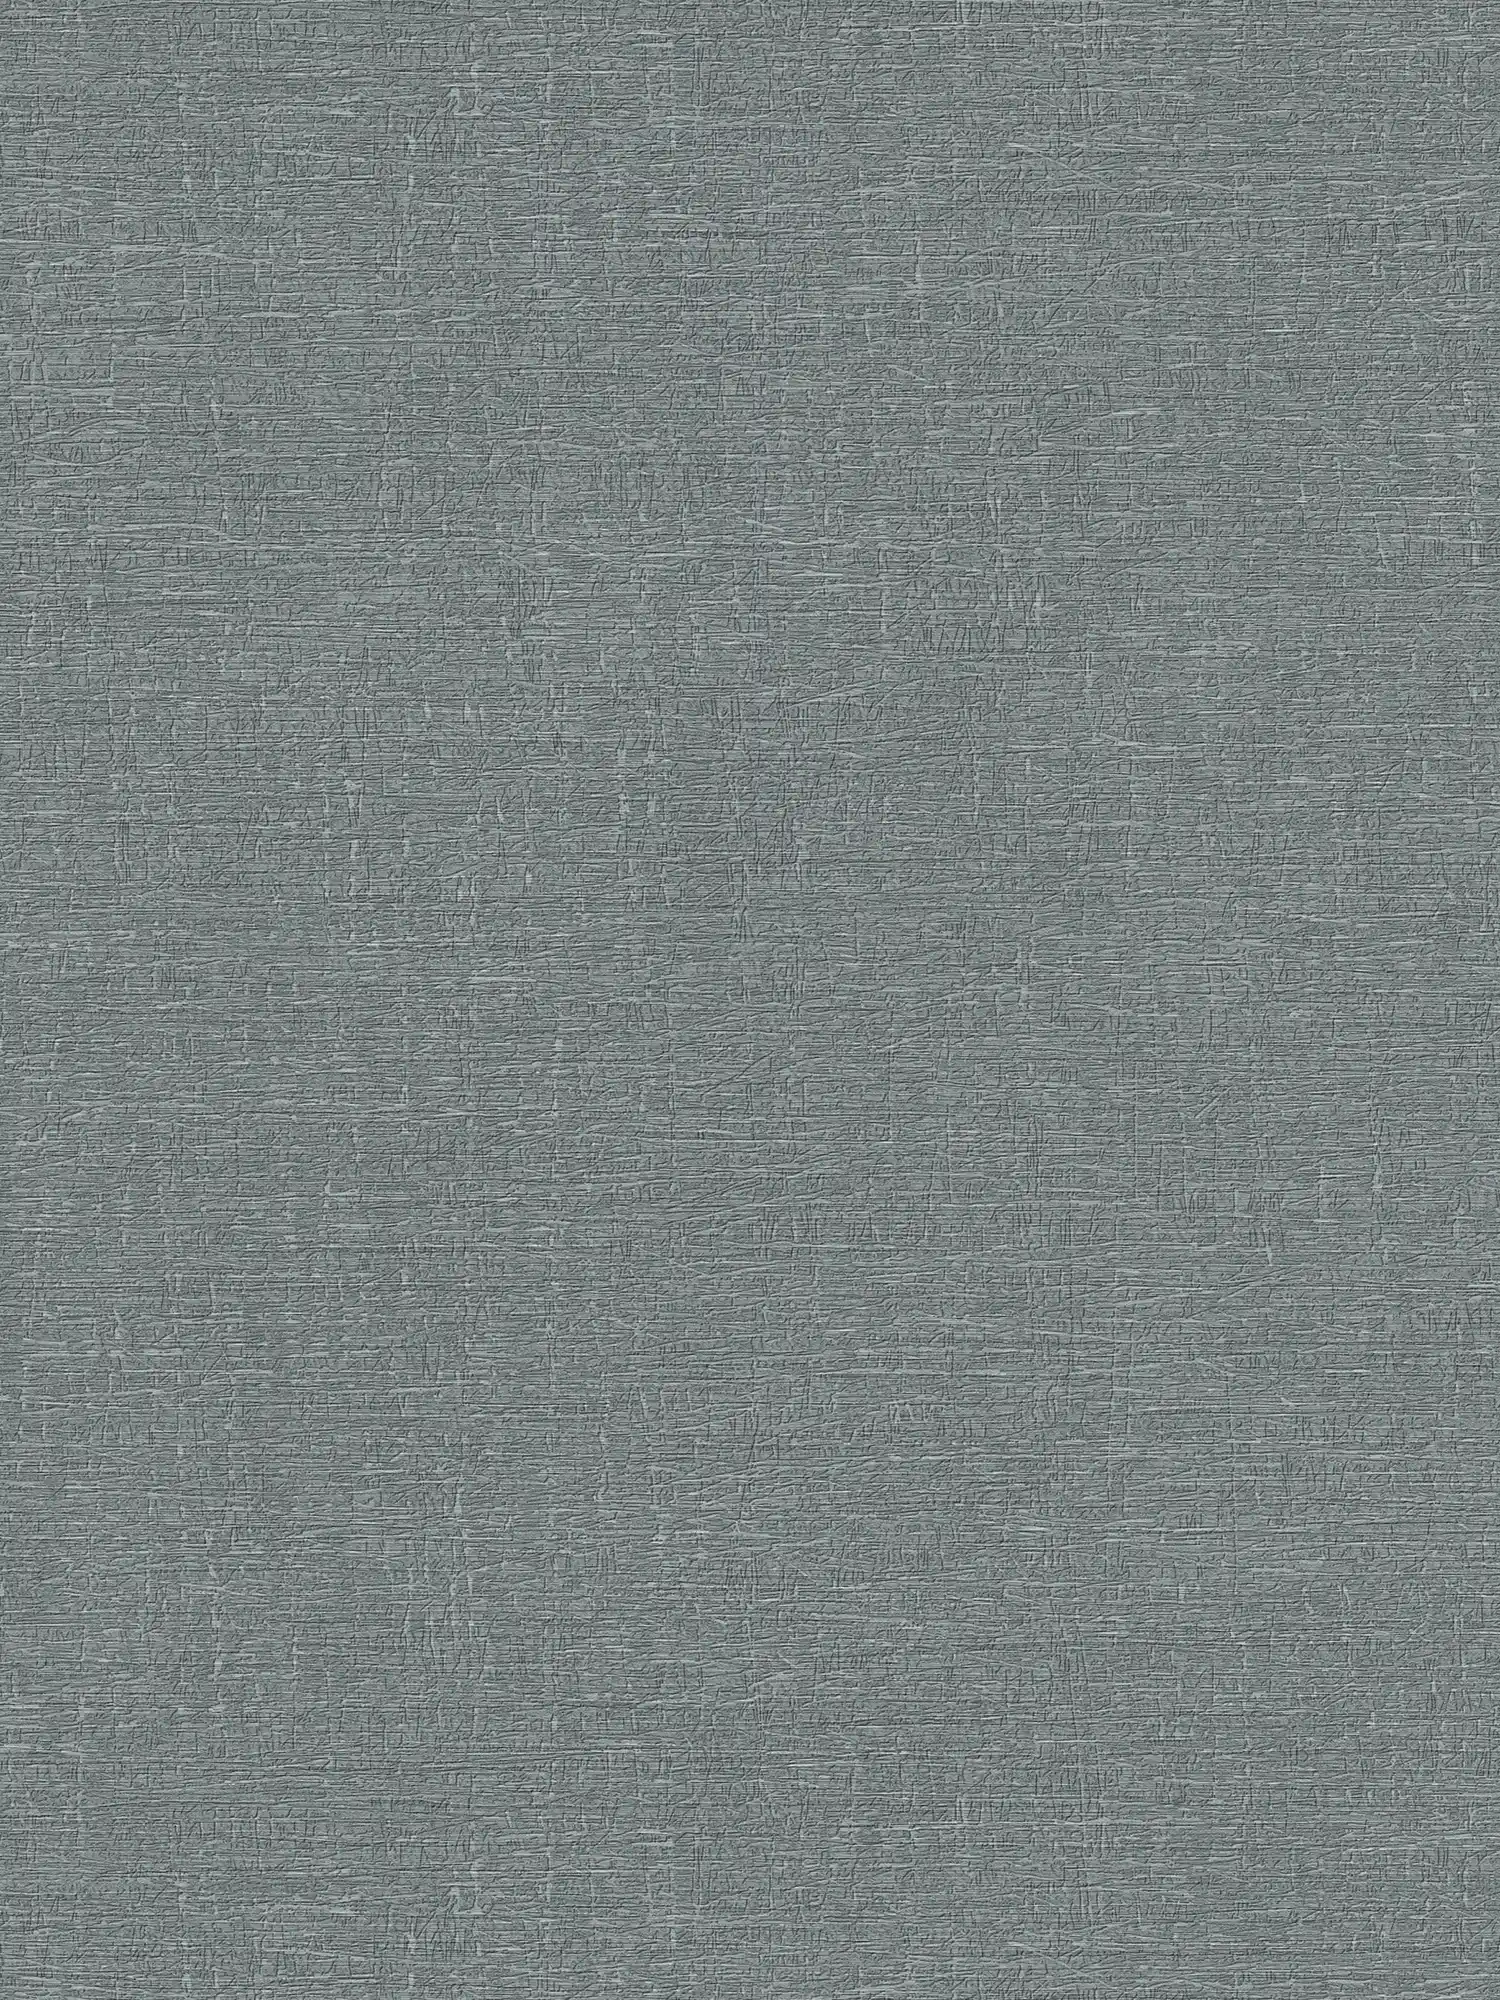 Vliesbehang in textiellook met lichte textuur - grijs
